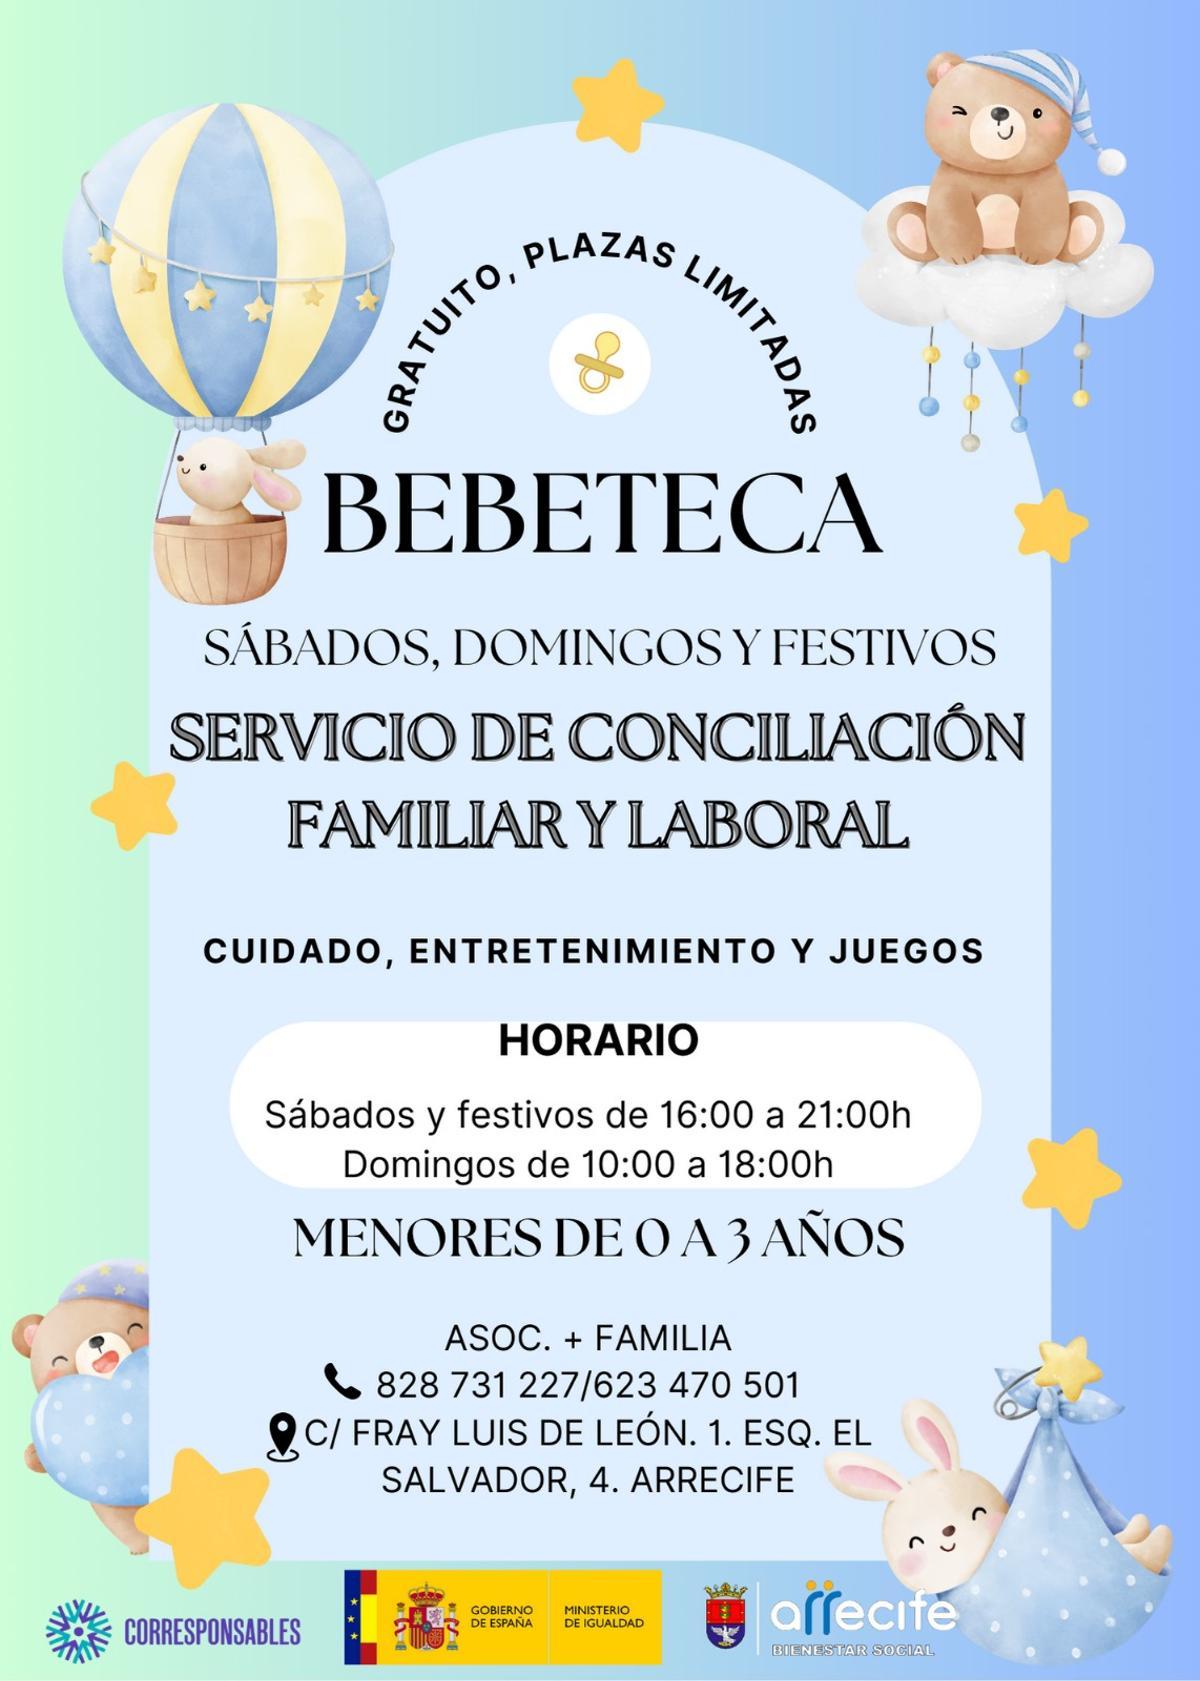 Cartel de la Bebeteca Conciliadora para los fines de semana y festivos en Arrecife.